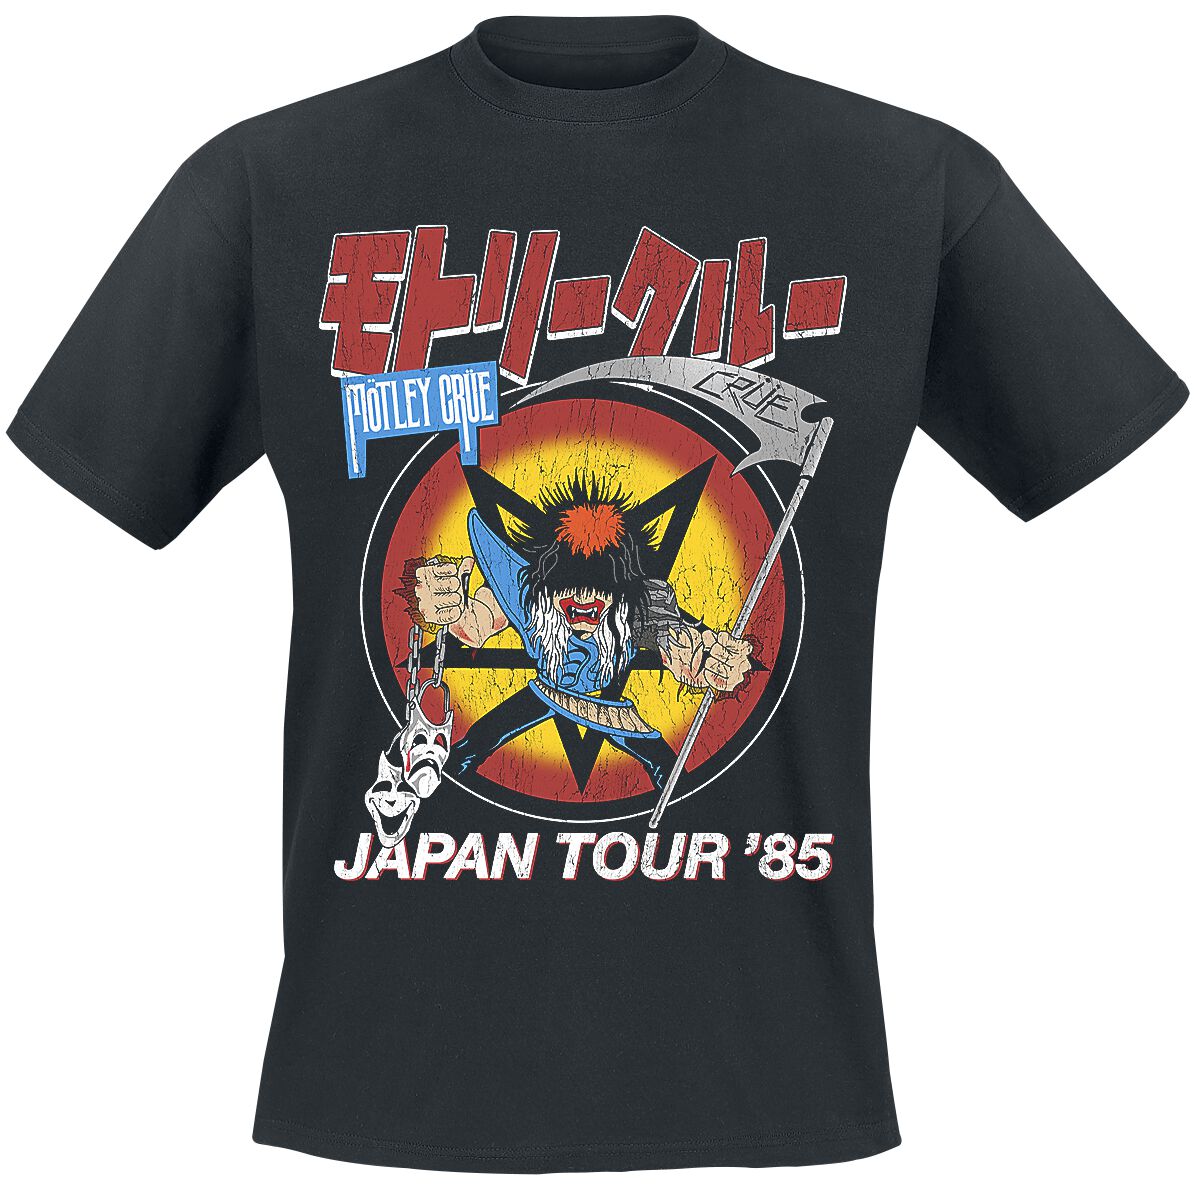 Mötley Crüe T-Shirt - Japan Tour - S bis 4XL - für Männer - Größe M - schwarz  - Lizenziertes Merchandise!